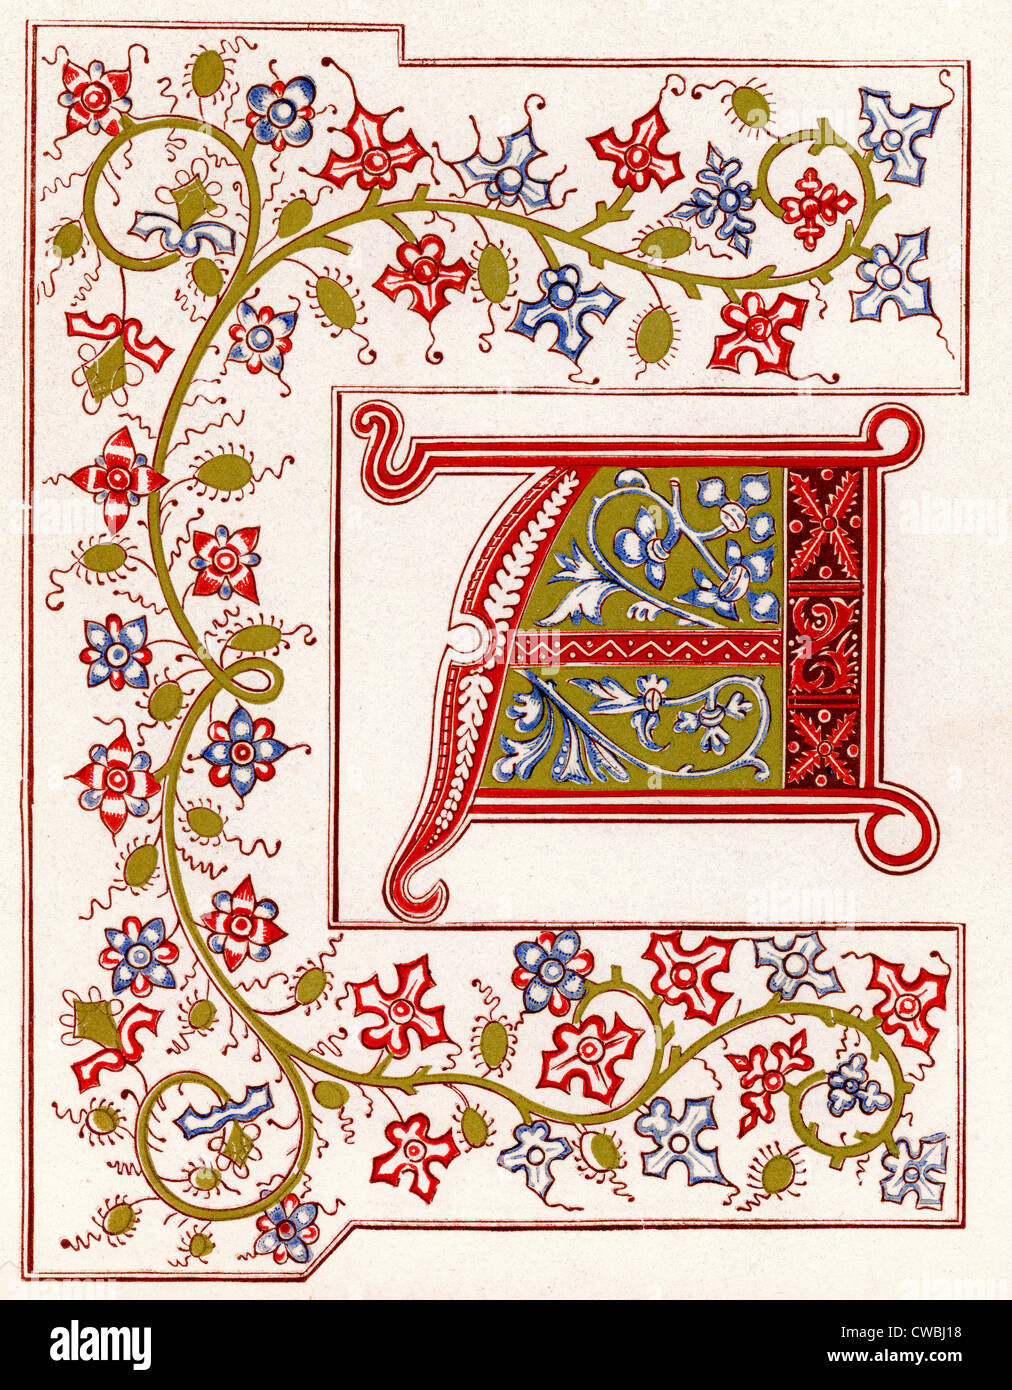 Les Merbeilles du monde, 1409, particolare di un borgo medievale manoscritto illuminato Foto Stock